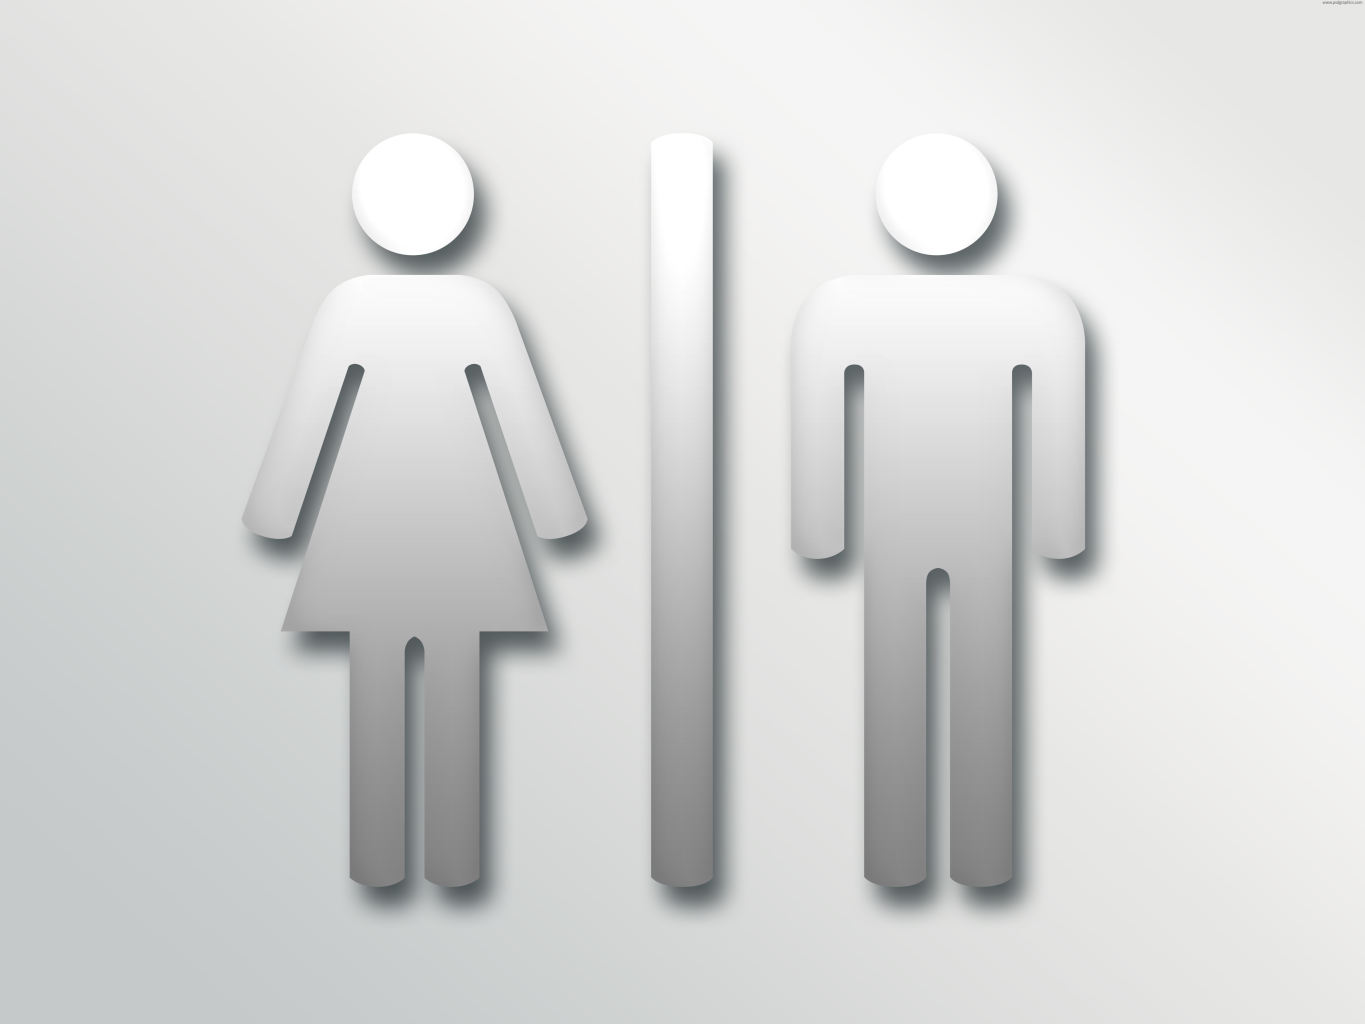  عادات تساهم في تدمير الكليتين Restroom-toilet-sign-jpg_122804